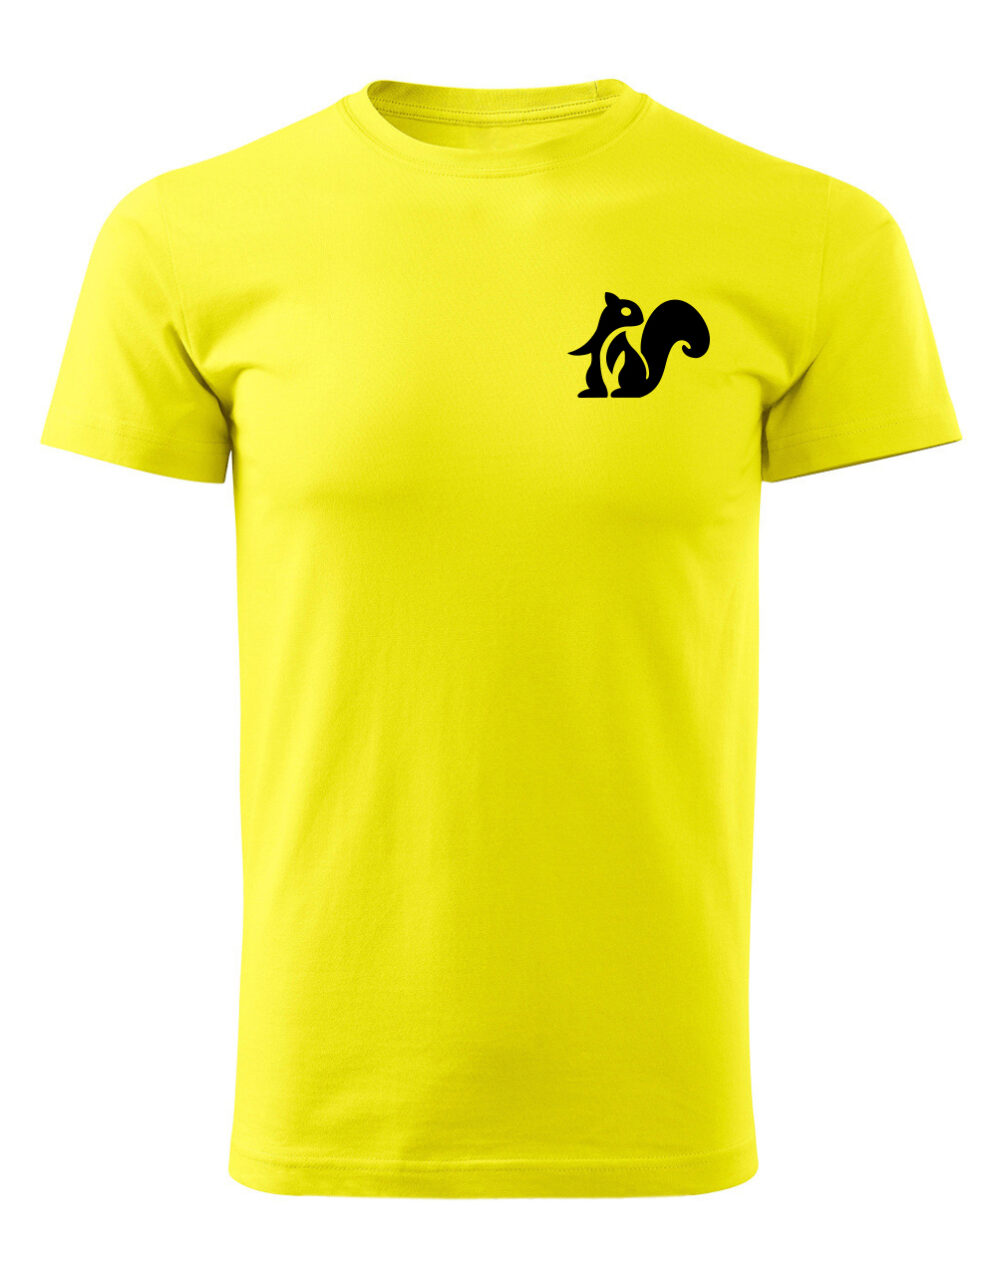 Pánské tričko s potiskem Veverka žlutá